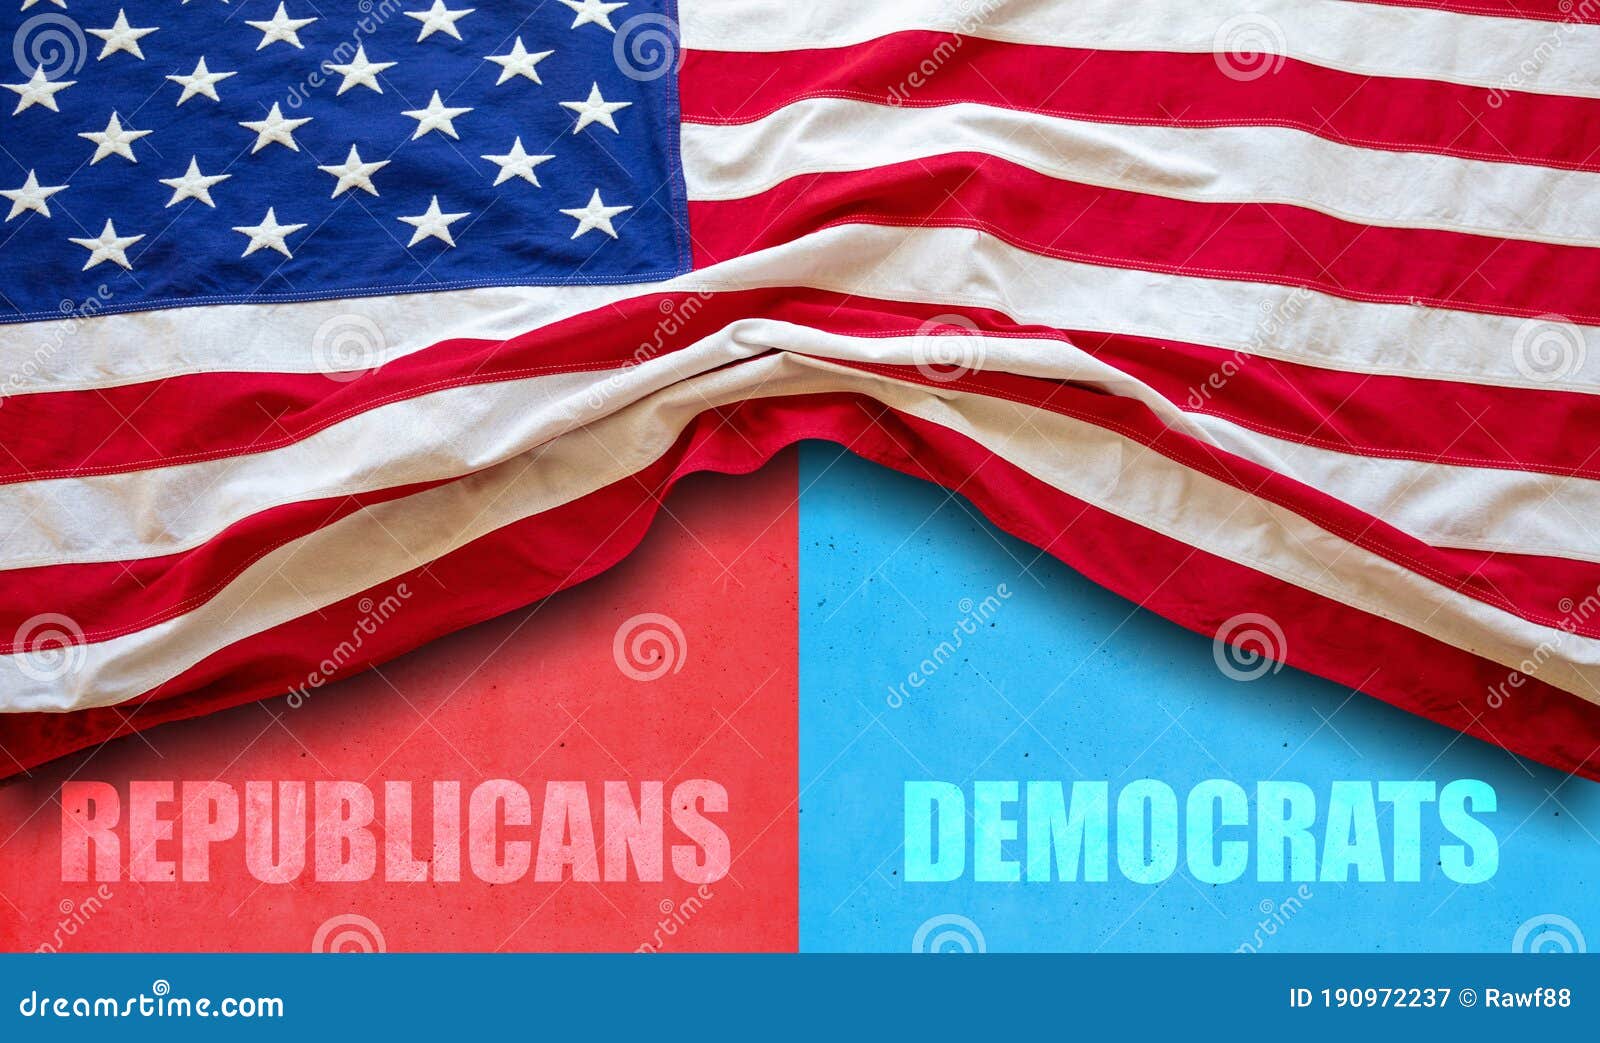 Демократы, республиканцы текст на красной и голубой цвет фона. Выбор президентских выборов в США